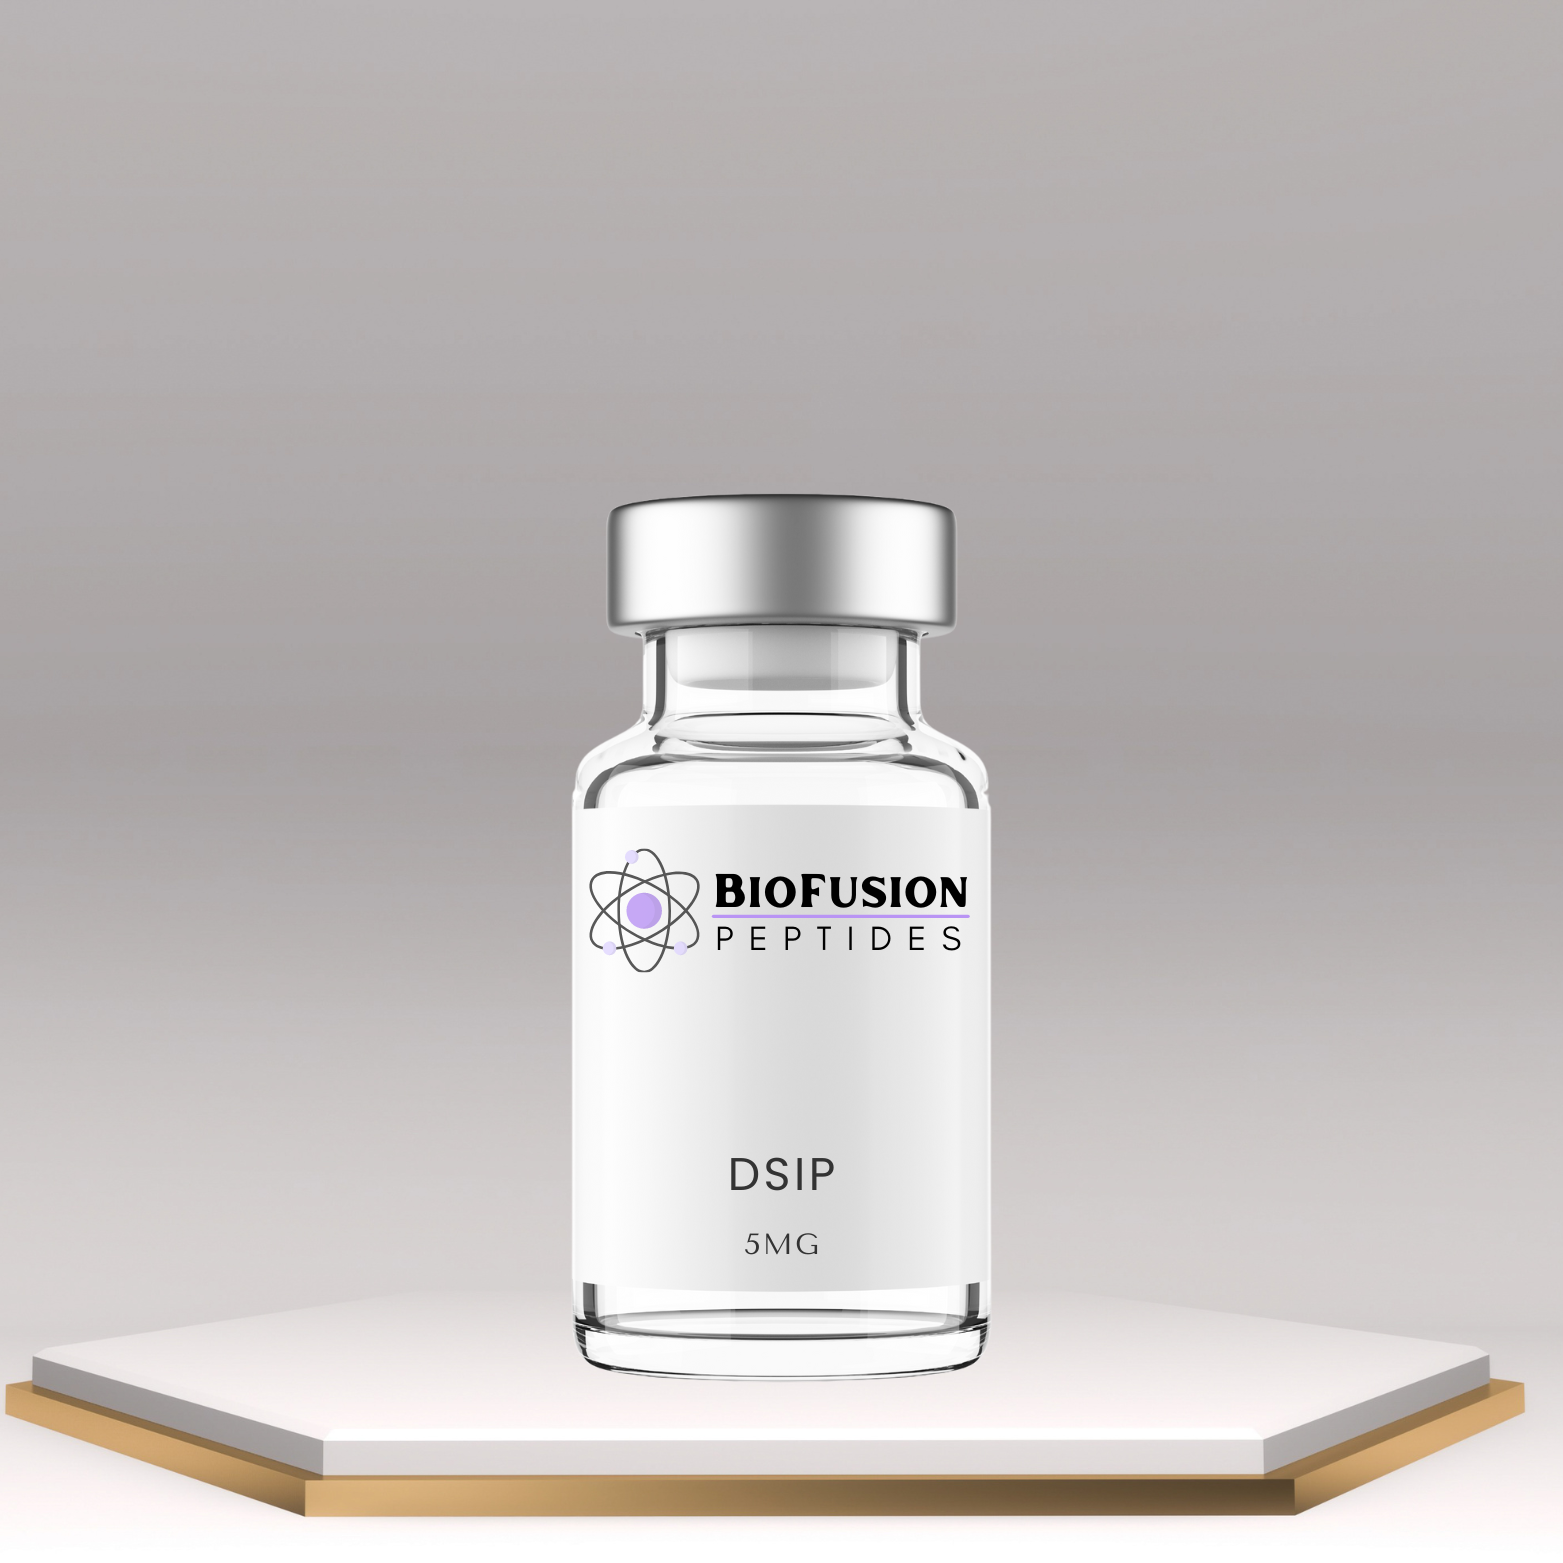 BioFusion Peptides DSIP 5MG vial